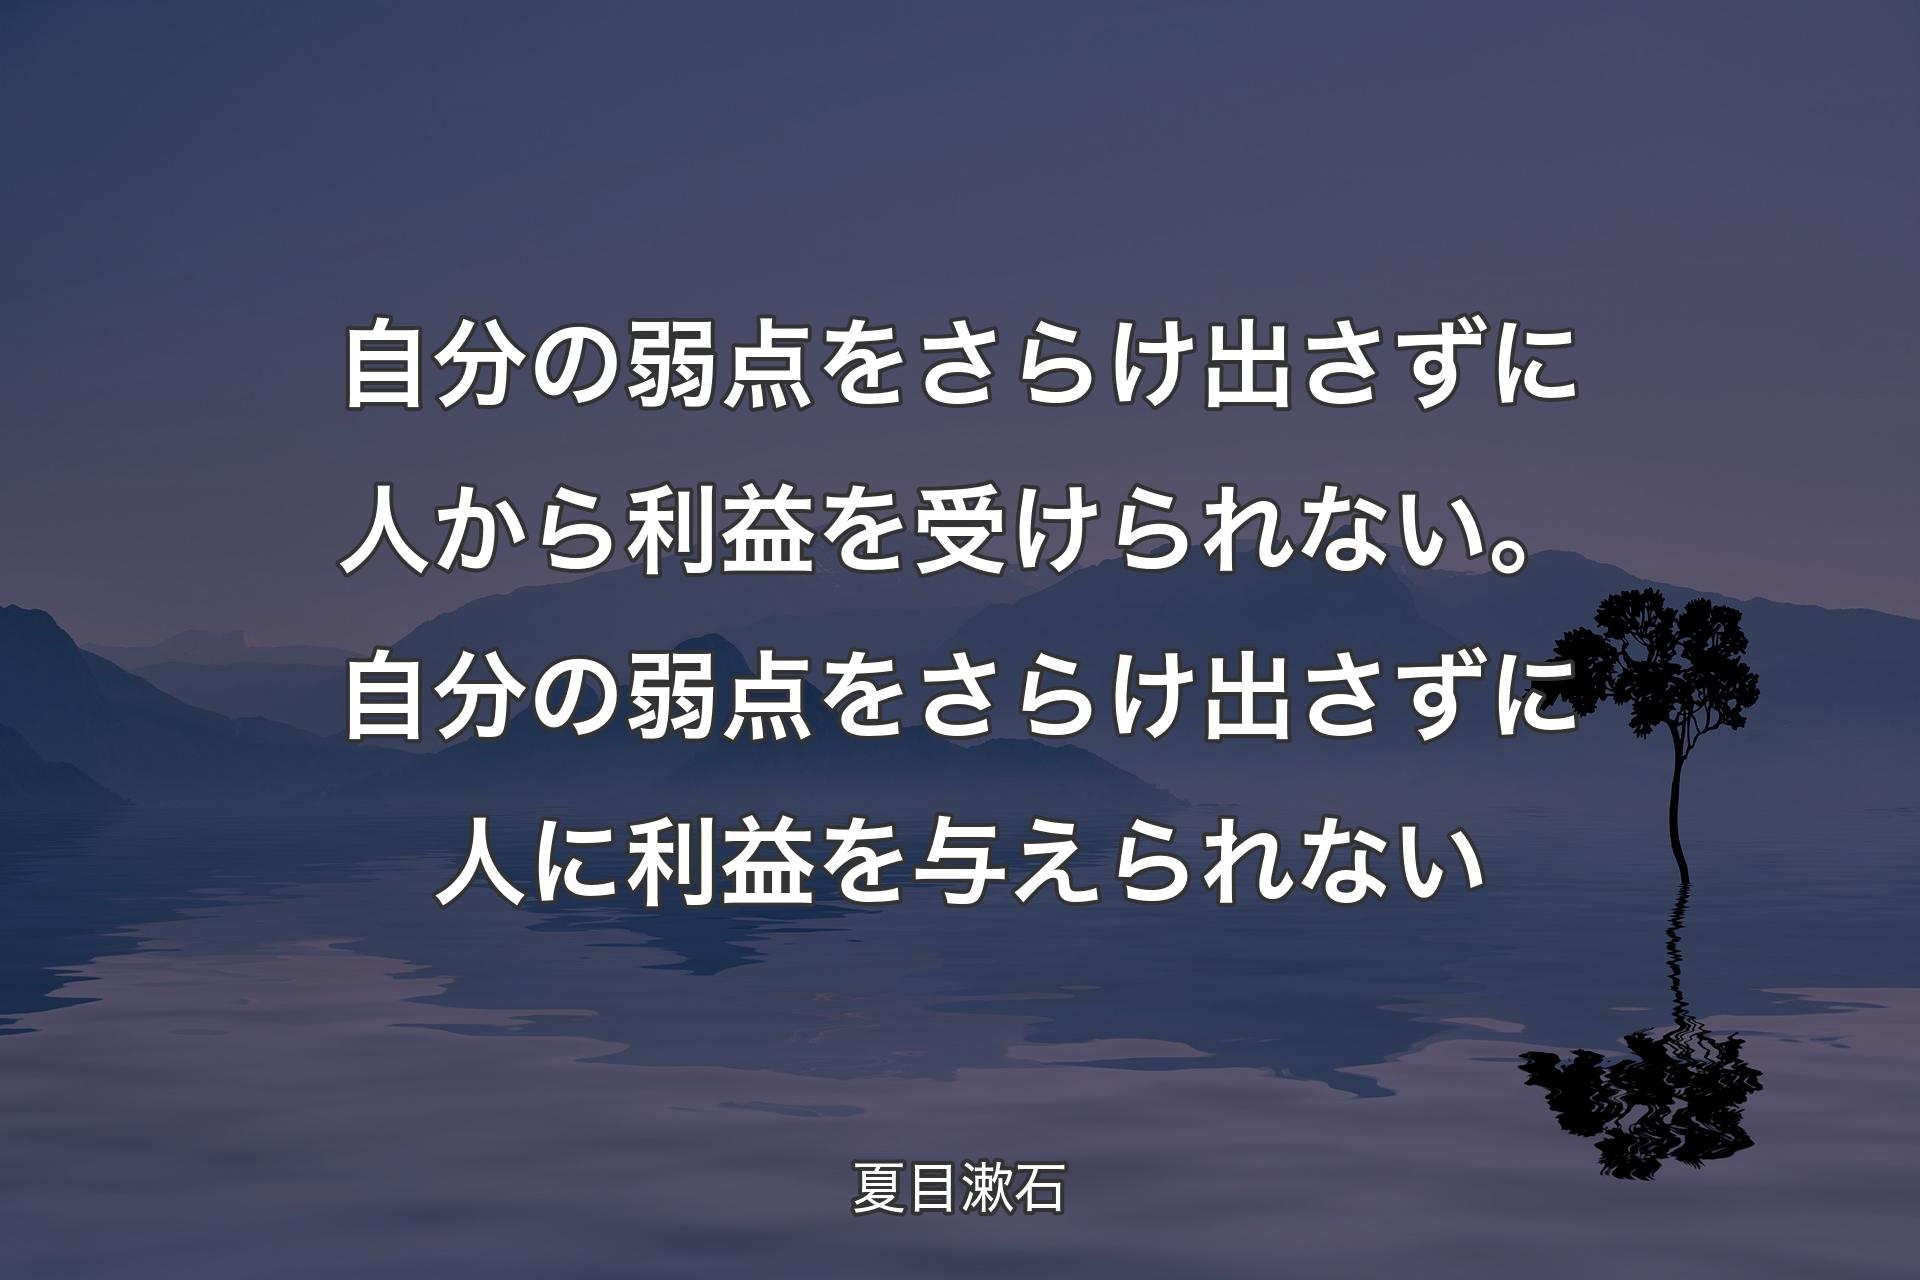 【背景4】自分の弱点をさらけ出さずに人から利益を受けられない。自分の弱点をさらけ出さずに人に利益を与えられない - 夏目漱石